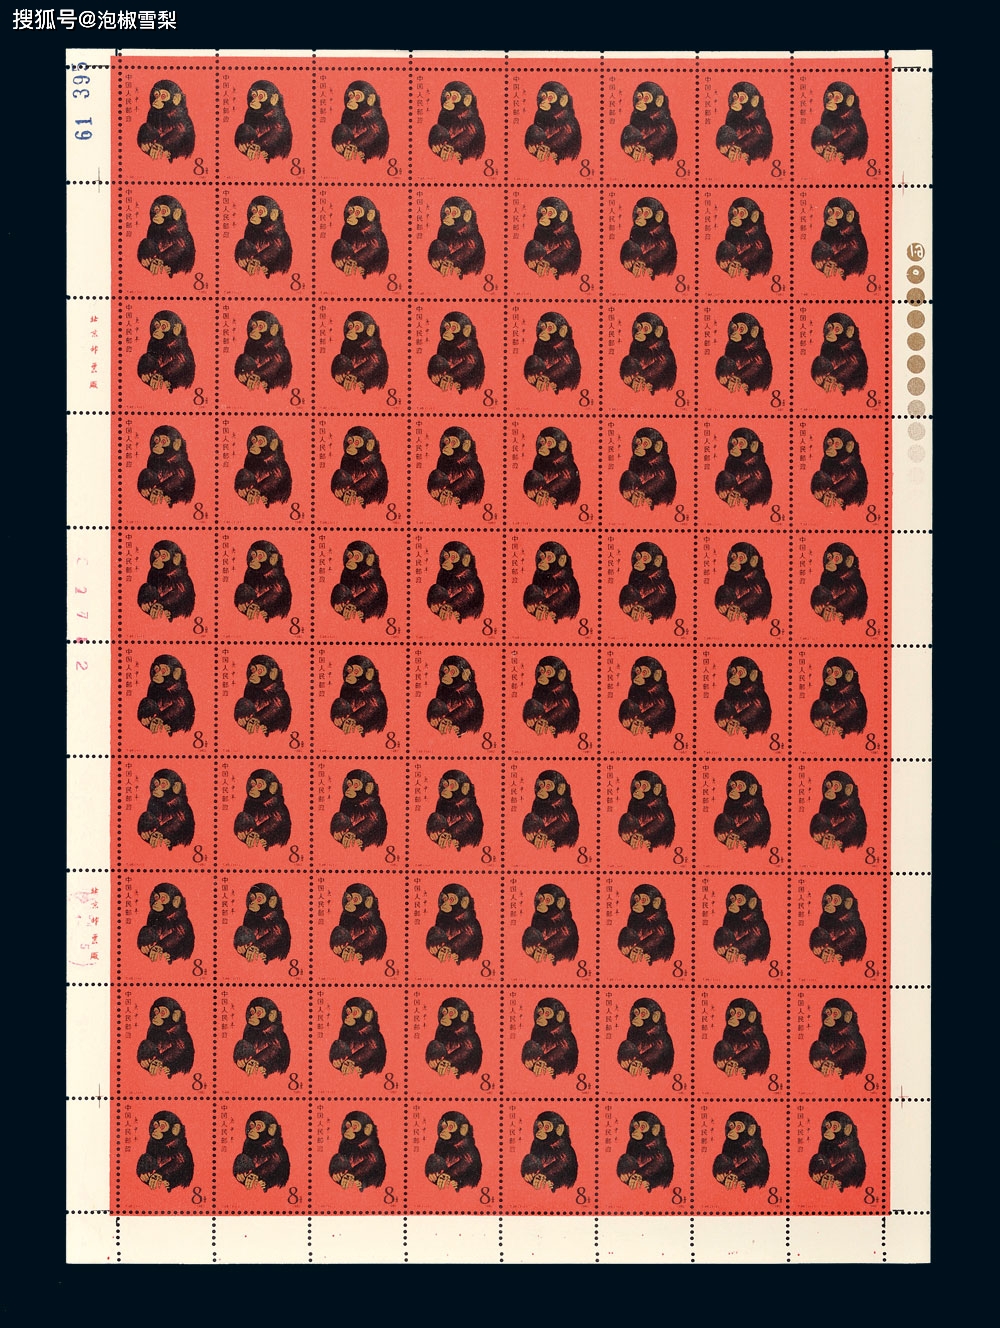 完整版猴票120万,印刷时因废票超过一半,工人们只能撕开拼凑